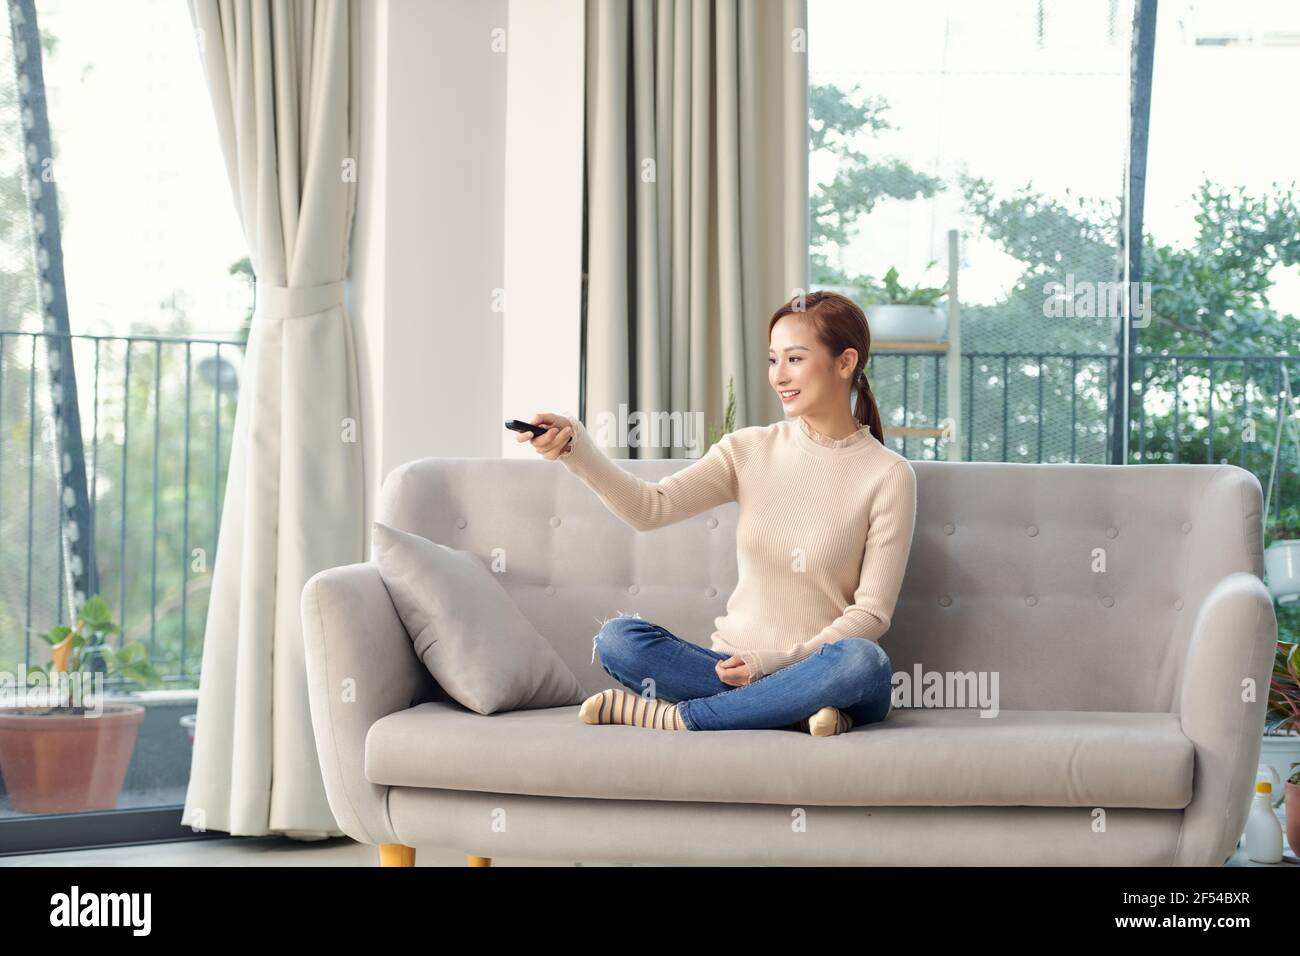 Immagine di una donna giovane ottimista e sorridente positiva seduto in casa guardare la tv tenendo il telecomando sul divano. Foto Stock